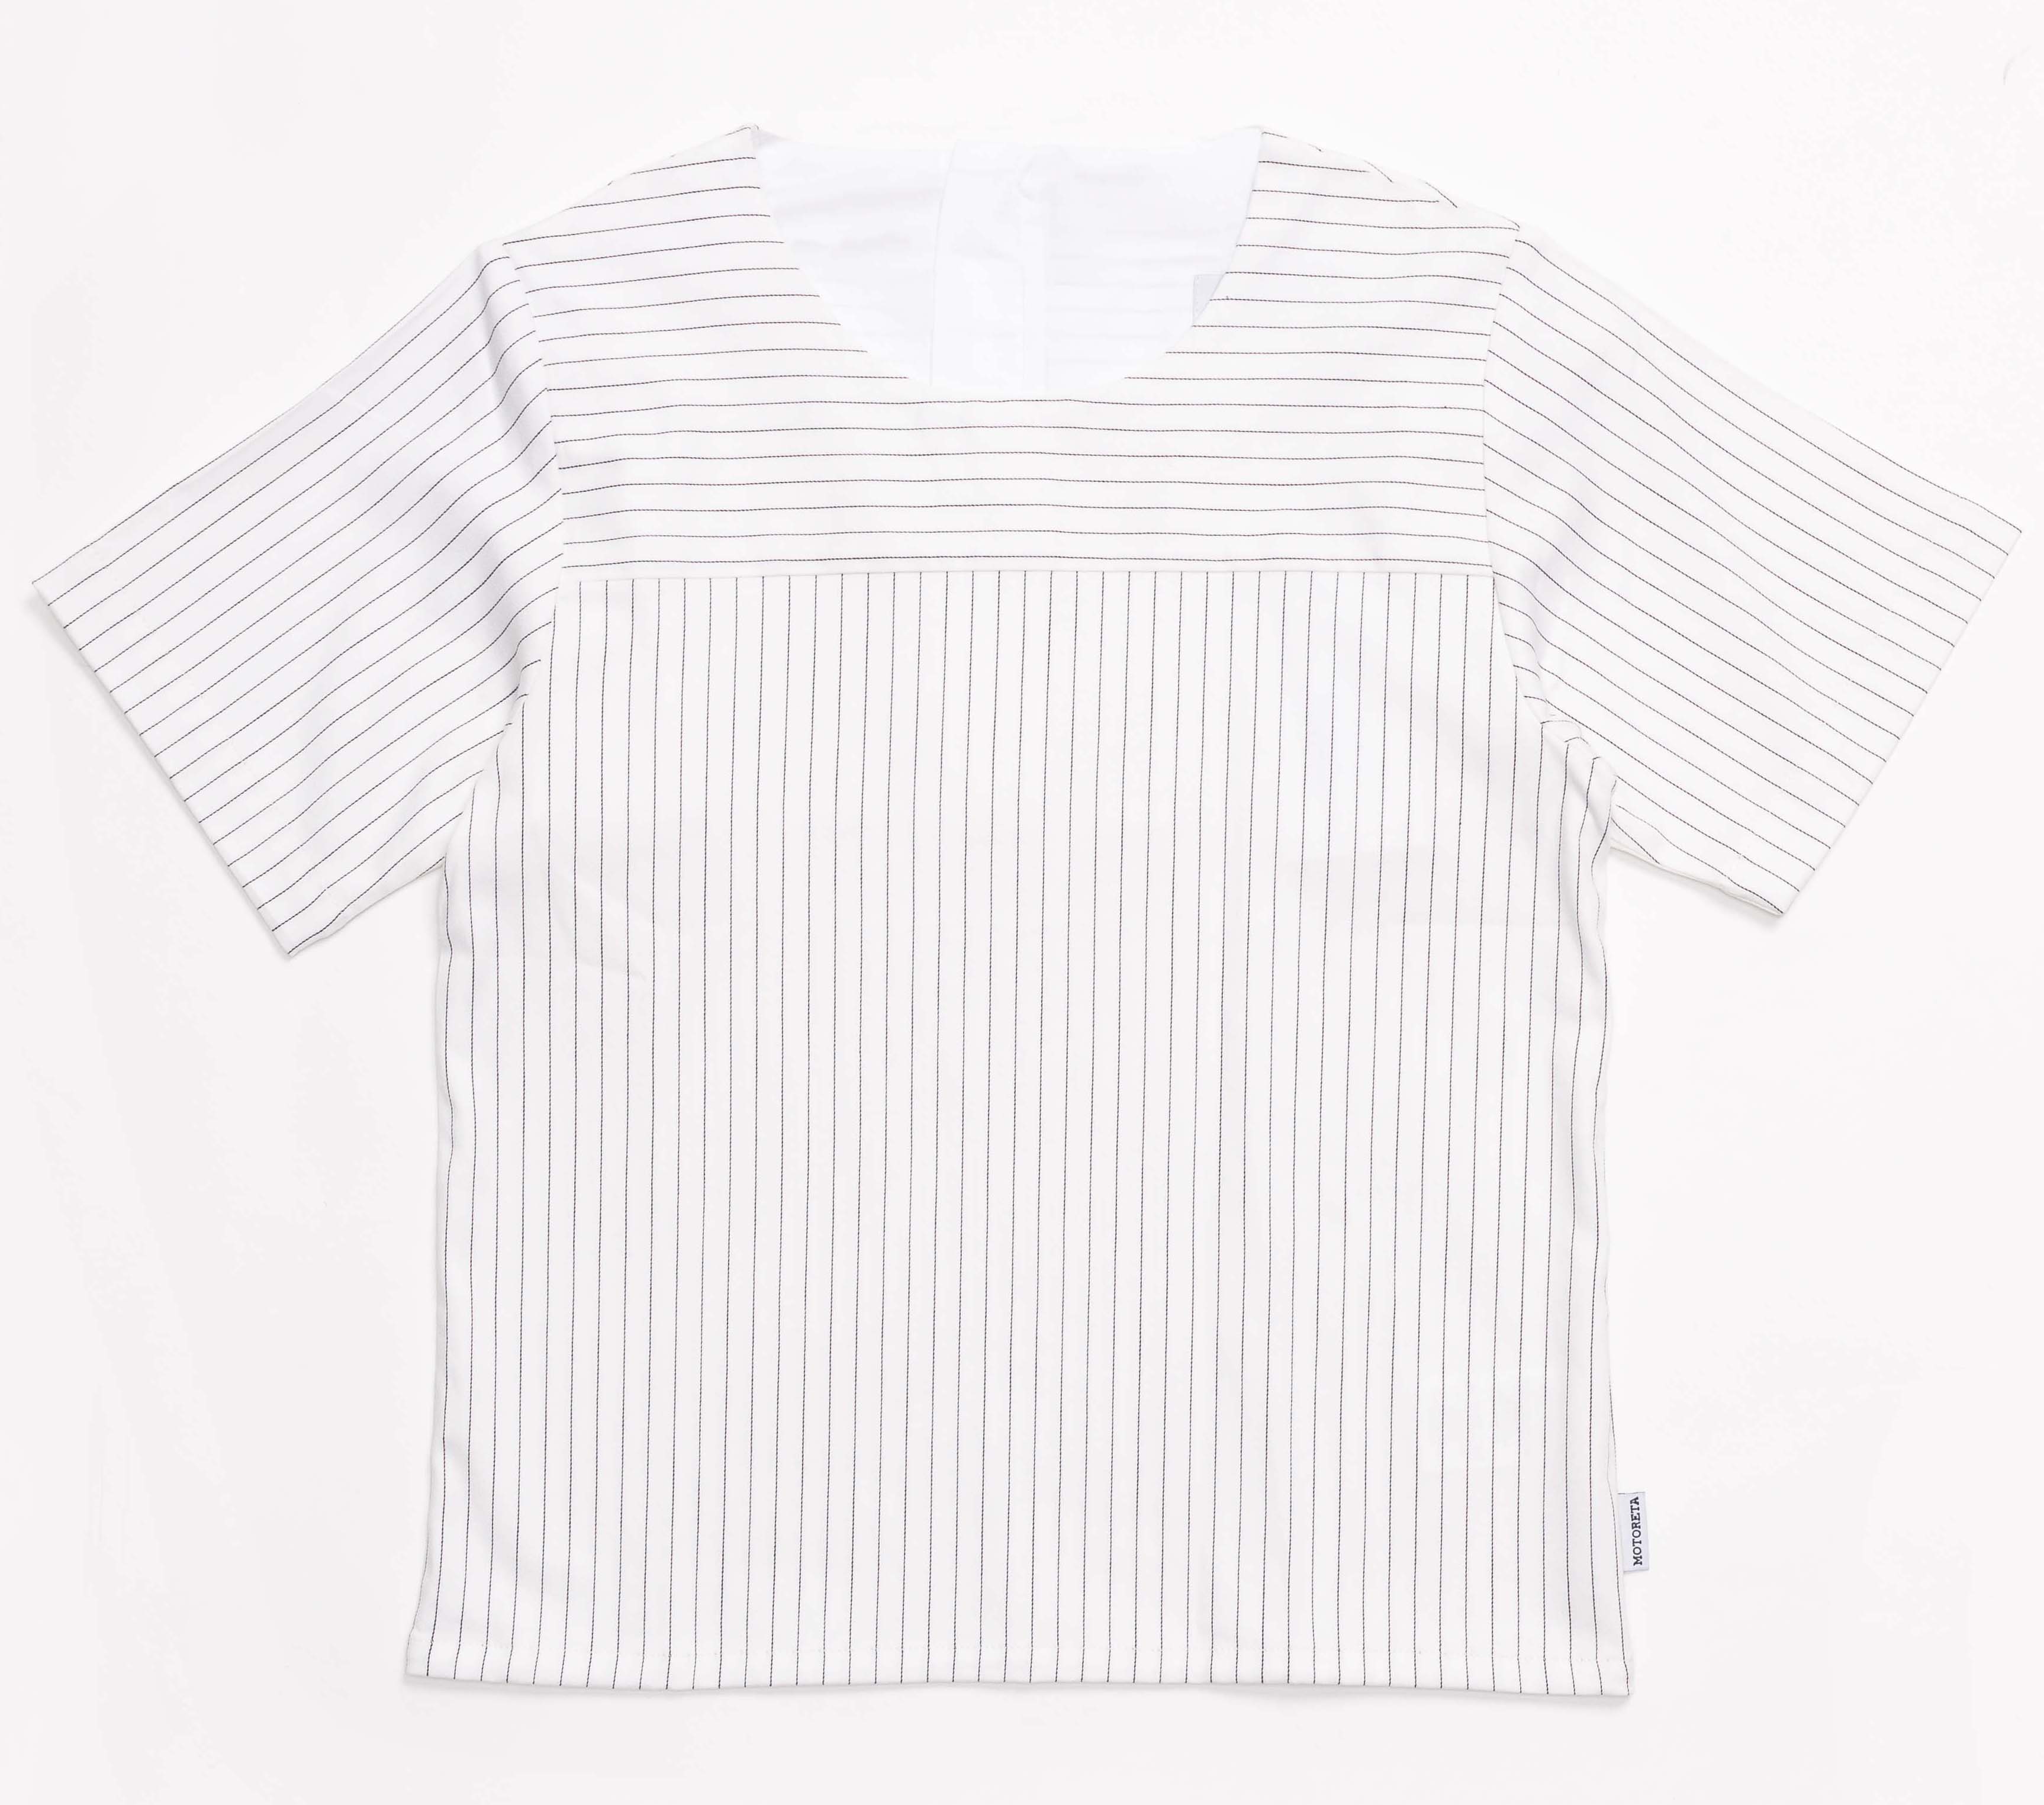                                                                                                                                              Tarifa Shirt - Stripes